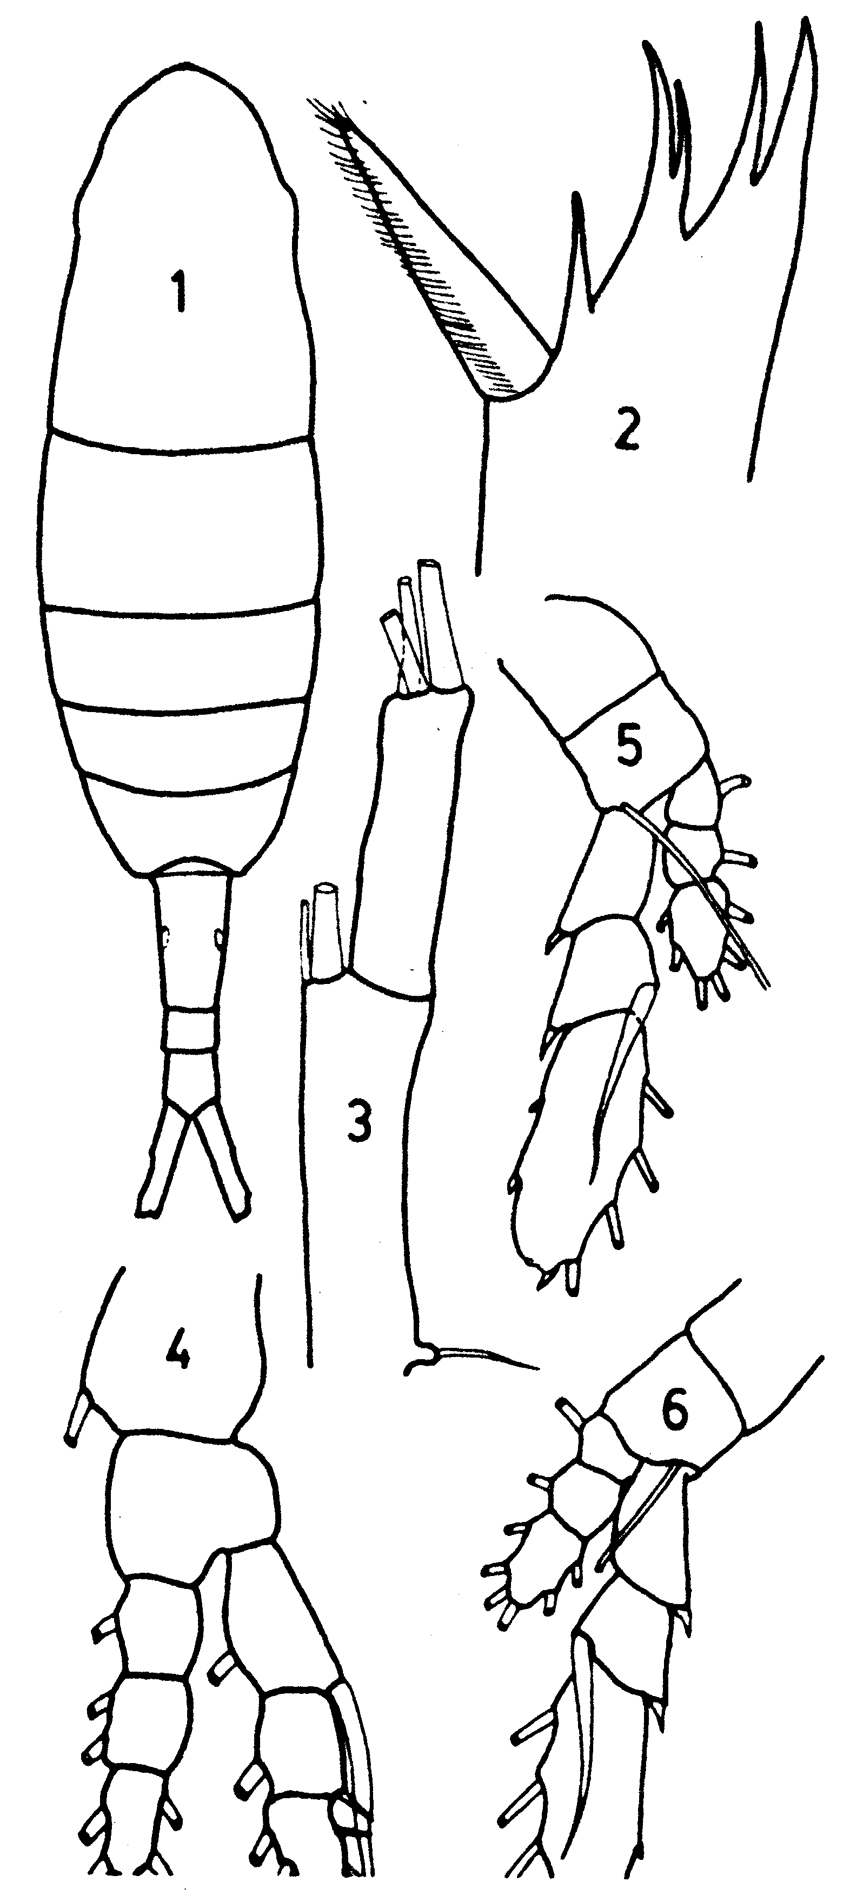 Species Augaptilus longicaudatus - Plate 7 of morphological figures